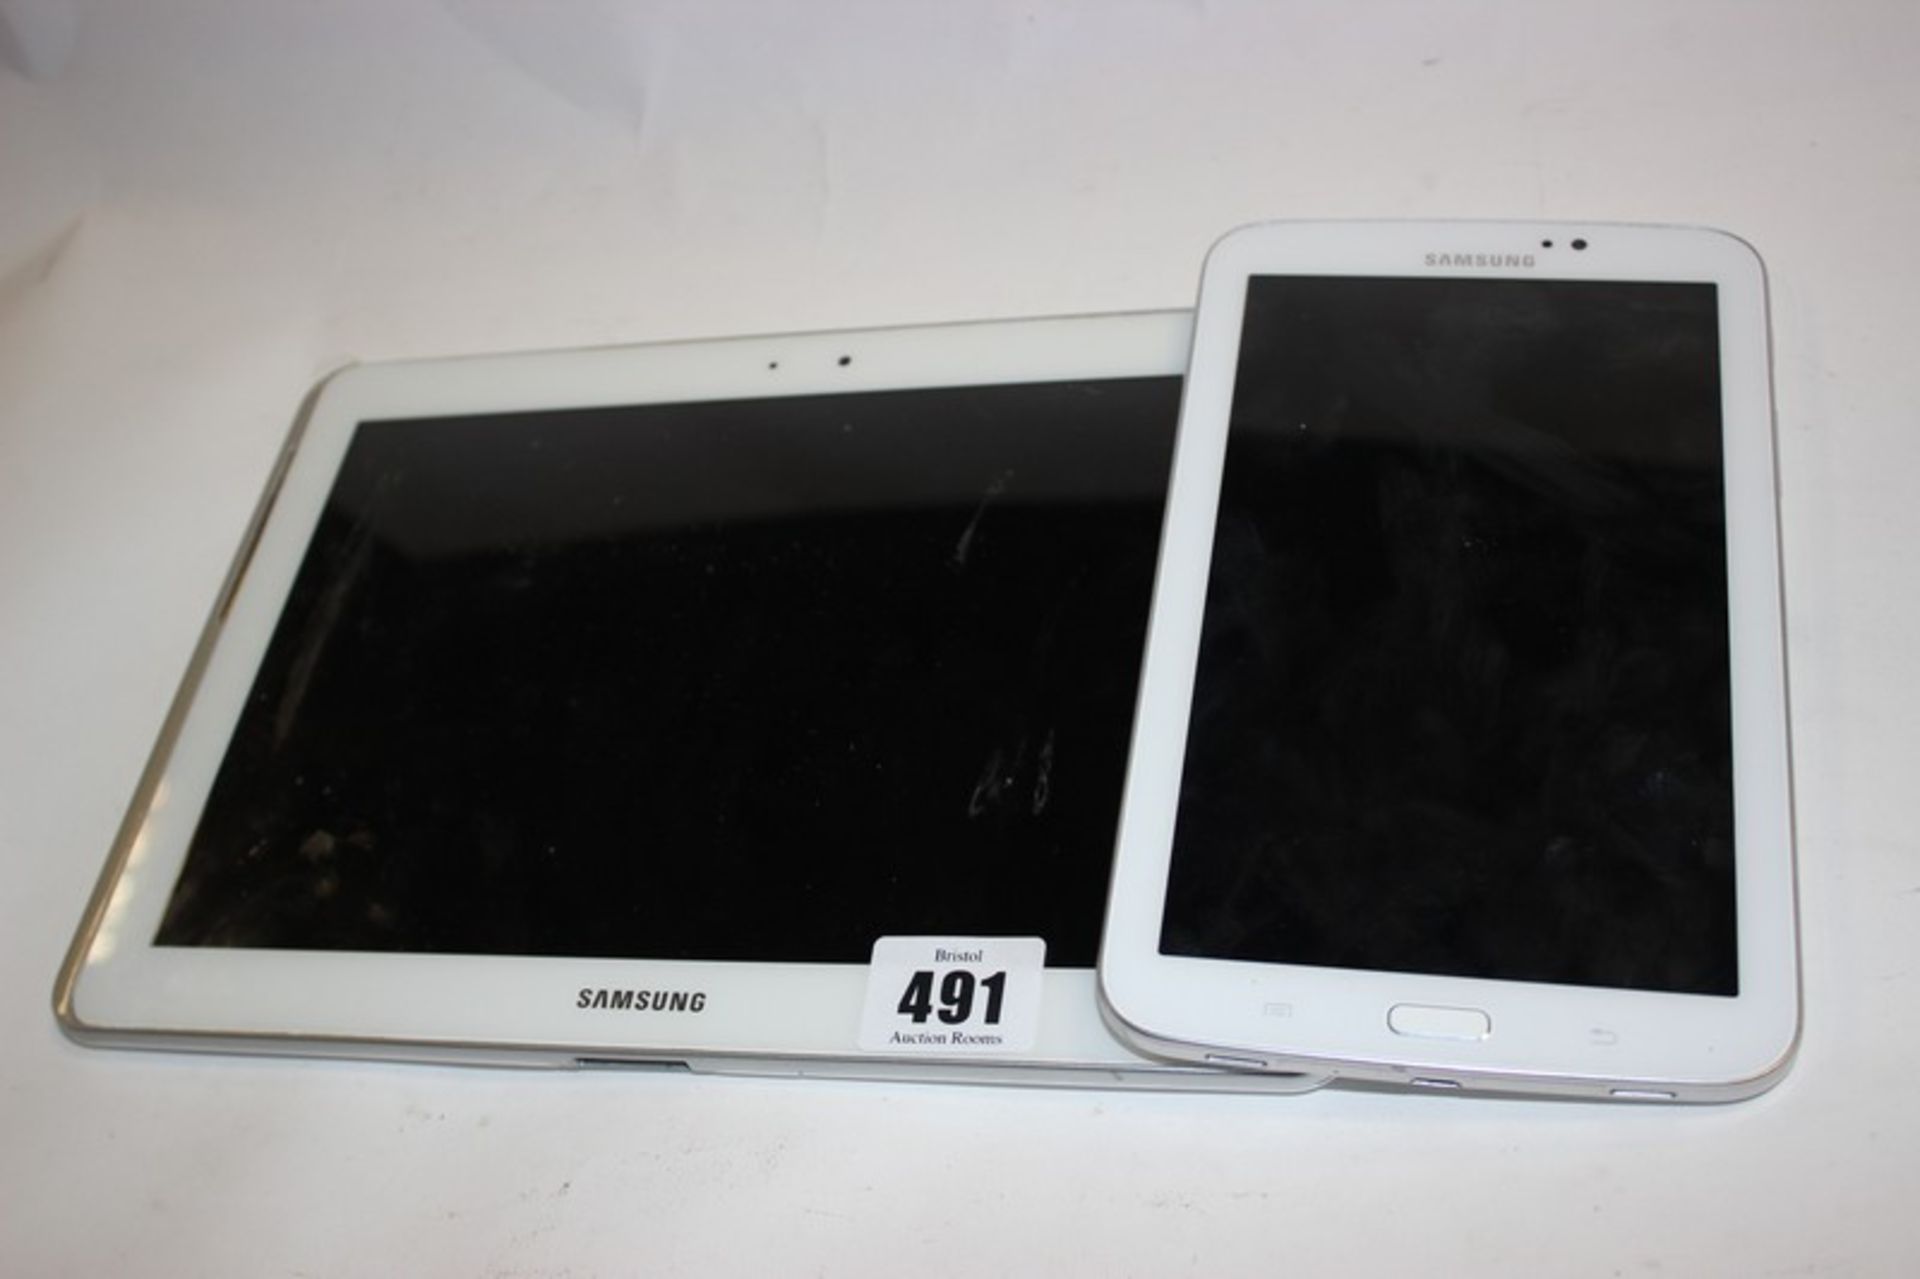 A Samsung Galaxy Tab 2 10.1 GT-P5110 16GB serial: RF2D50A6D4J and a Samsung Galaxy Tab 3 SM-T210R